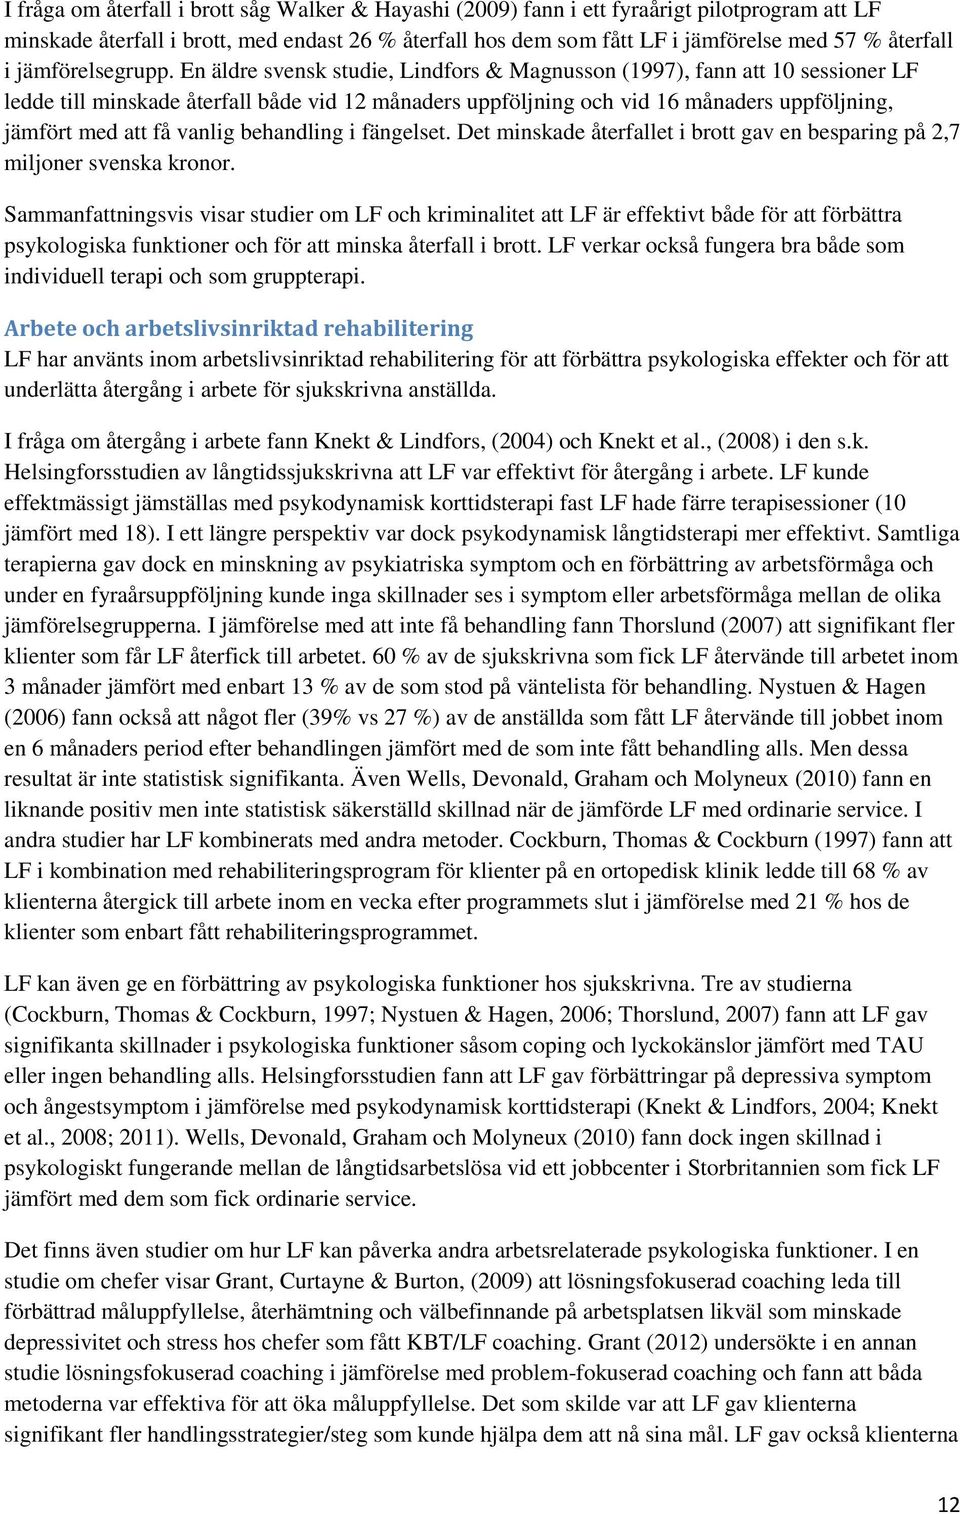 En äldre svensk studie, Lindfors & Magnusson (1997), fann att 10 sessioner LF ledde till minskade återfall både vid 12 månaders uppföljning och vid 16 månaders uppföljning, jämfört med att få vanlig